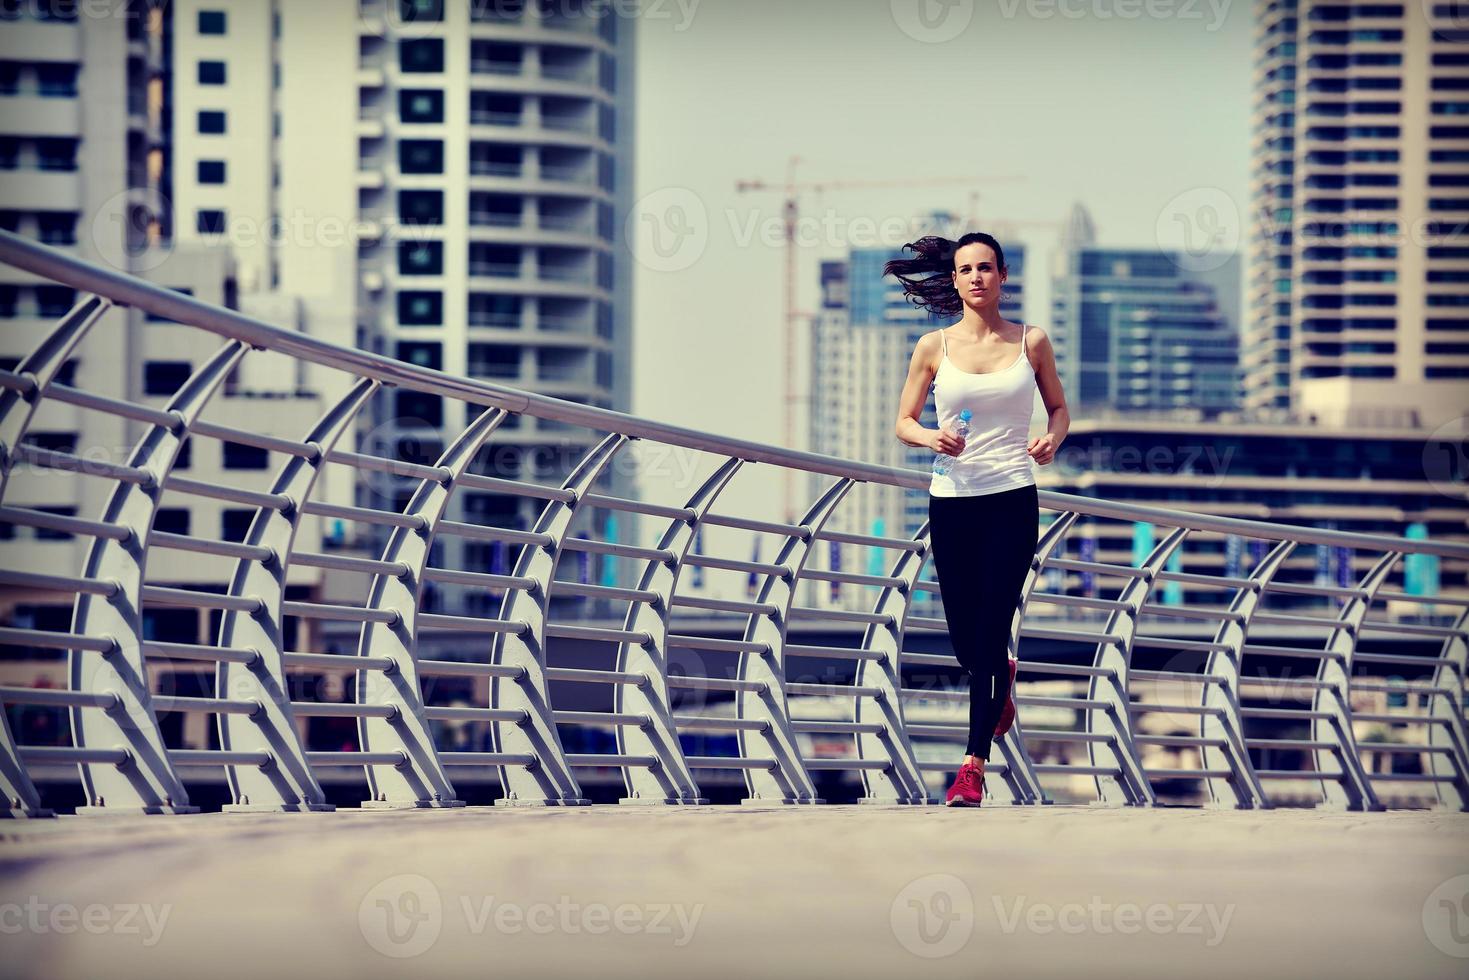 vrouw joggen in de ochtend foto